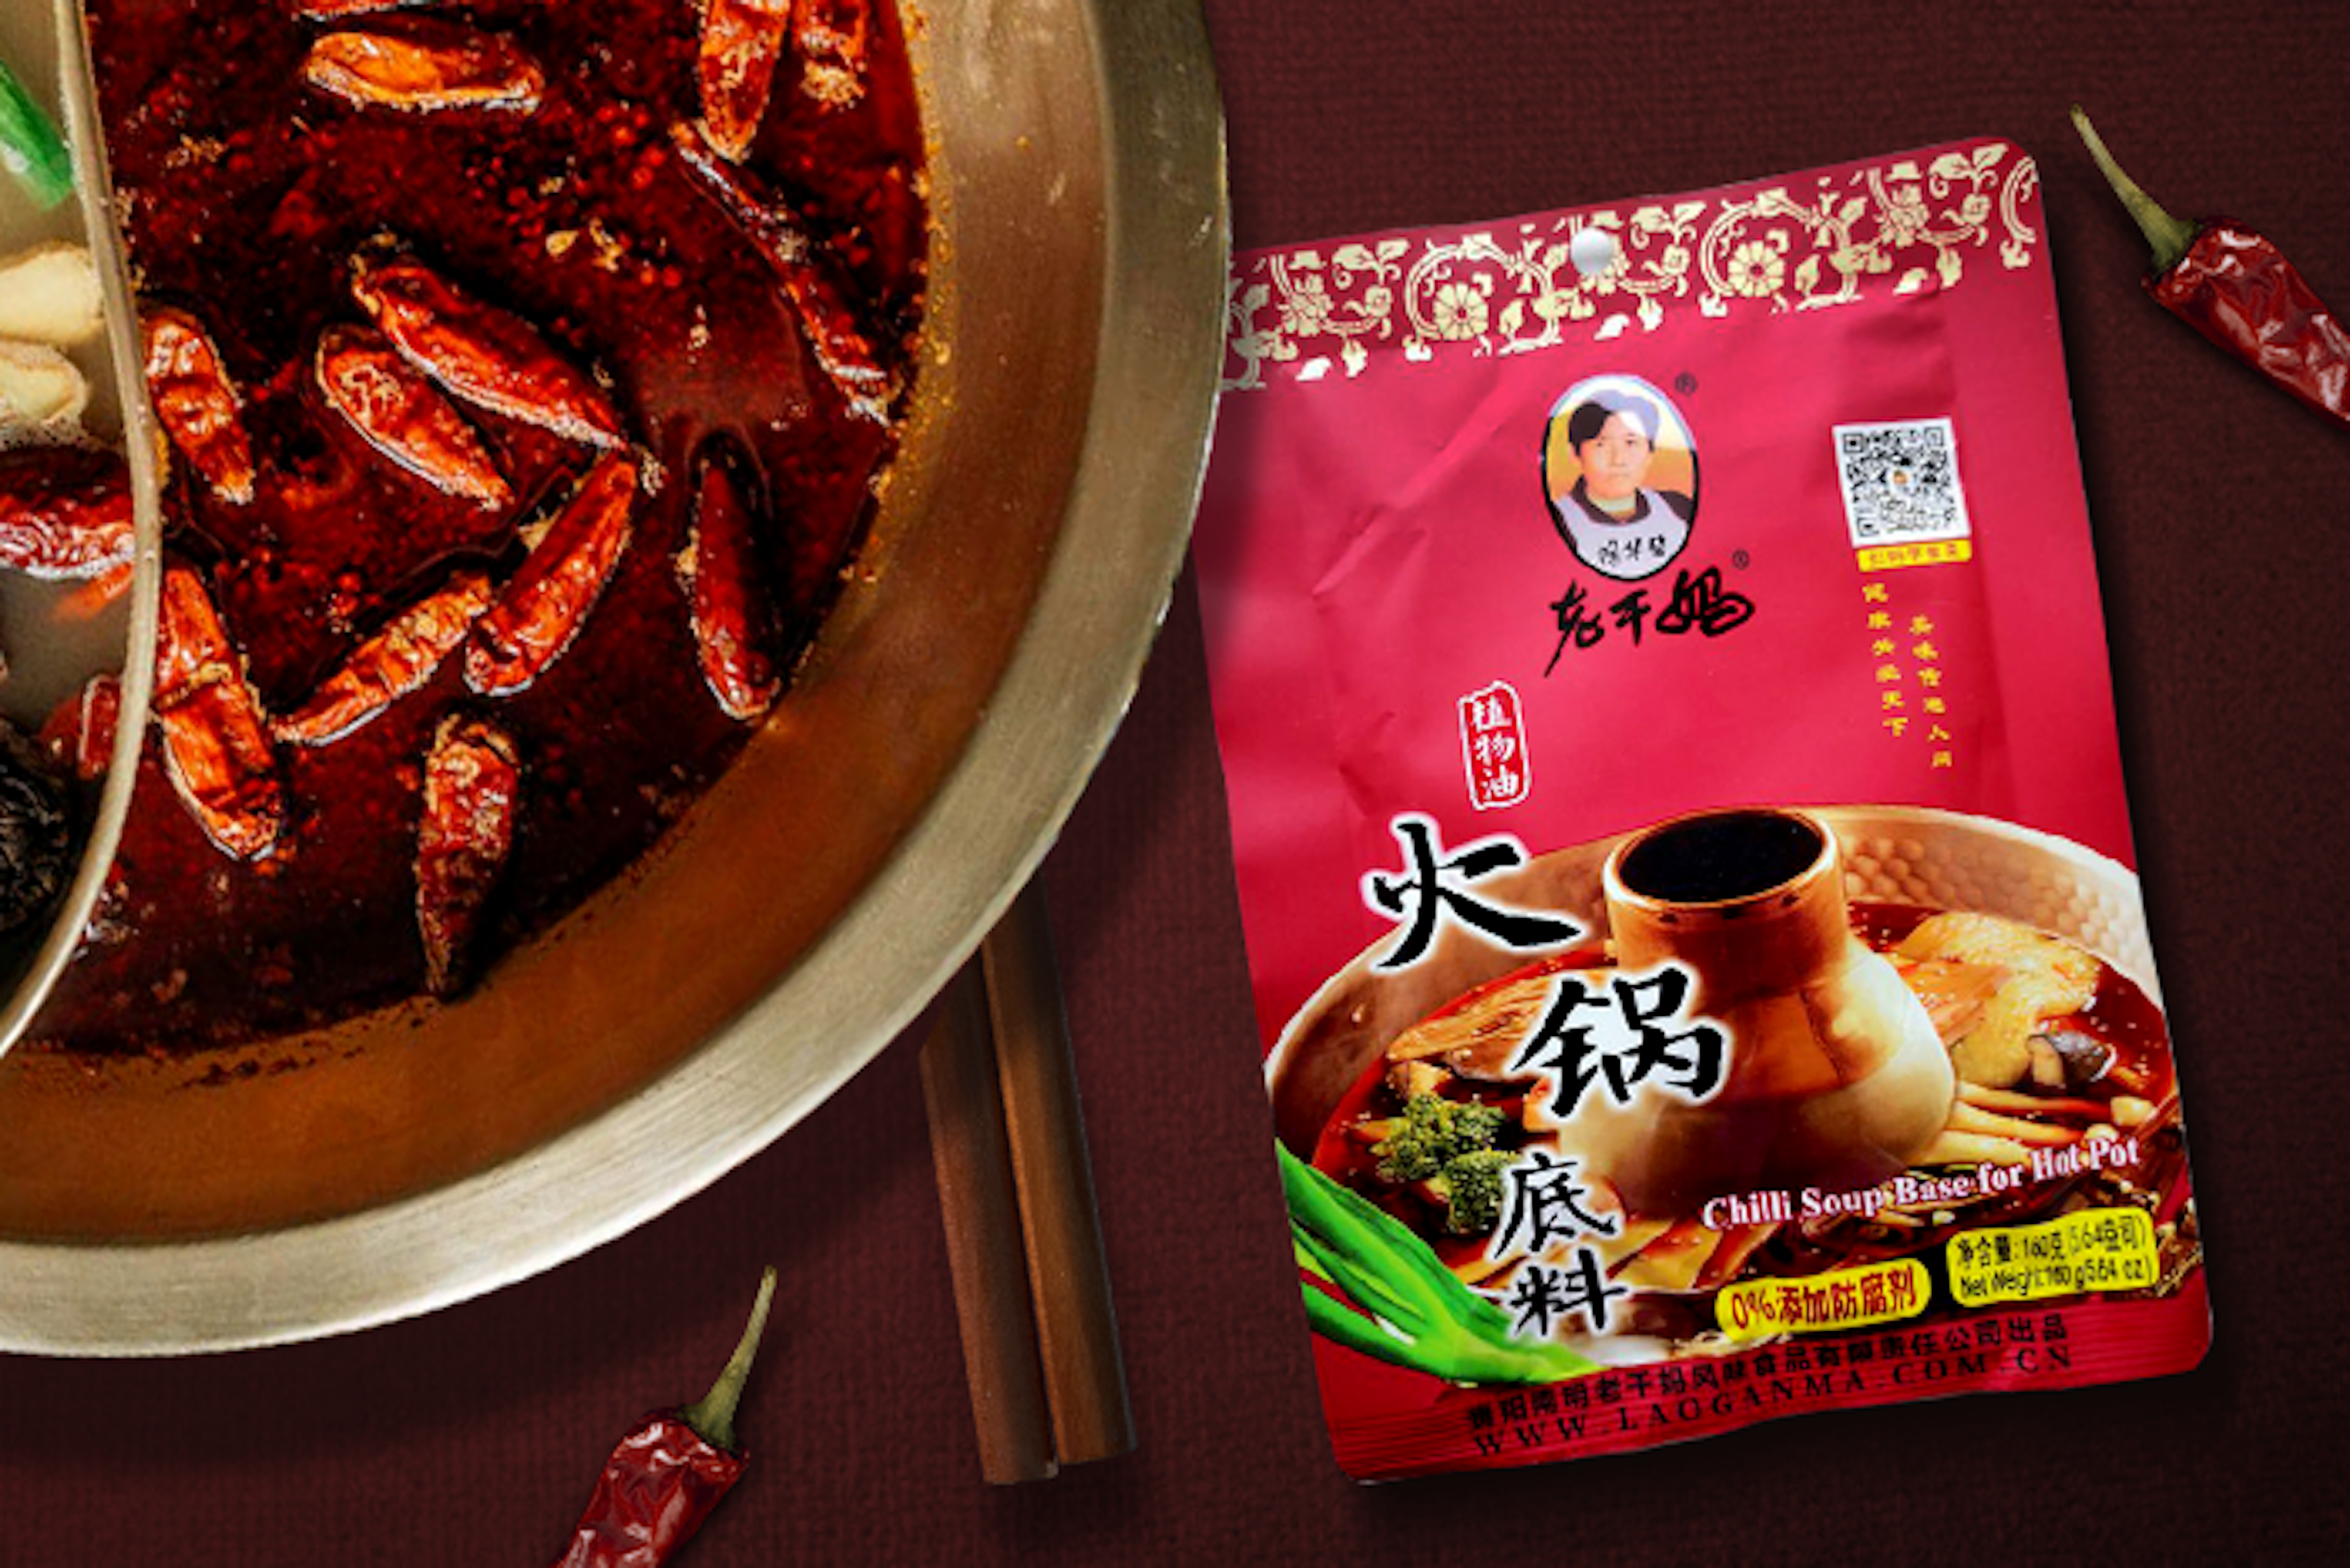 Vorderansicht der Laoganma Chilli-Suppenbasis für Hot Pot 160g Packung: Zeigt die attraktive Verpackung mit dem Logo und der Suppenbasis